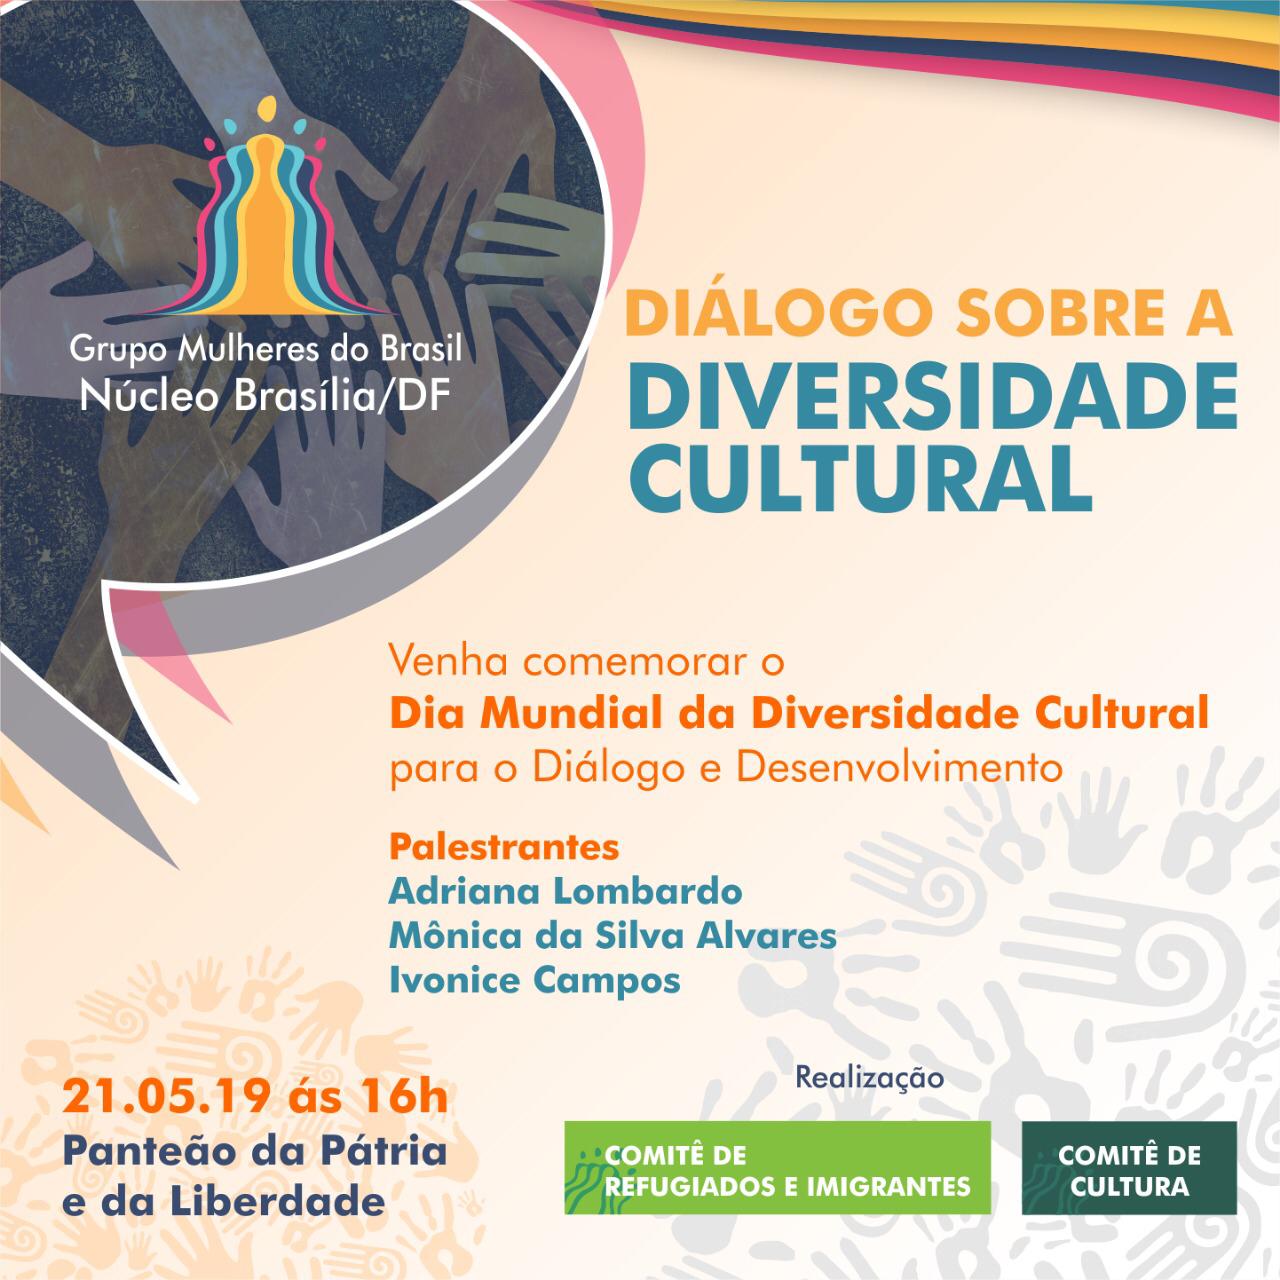 Dia Mundial da Diversidade Cultural para o Diálogo e o Desenvolvimento é celebrado em Brasília, no Panteão da Pátria